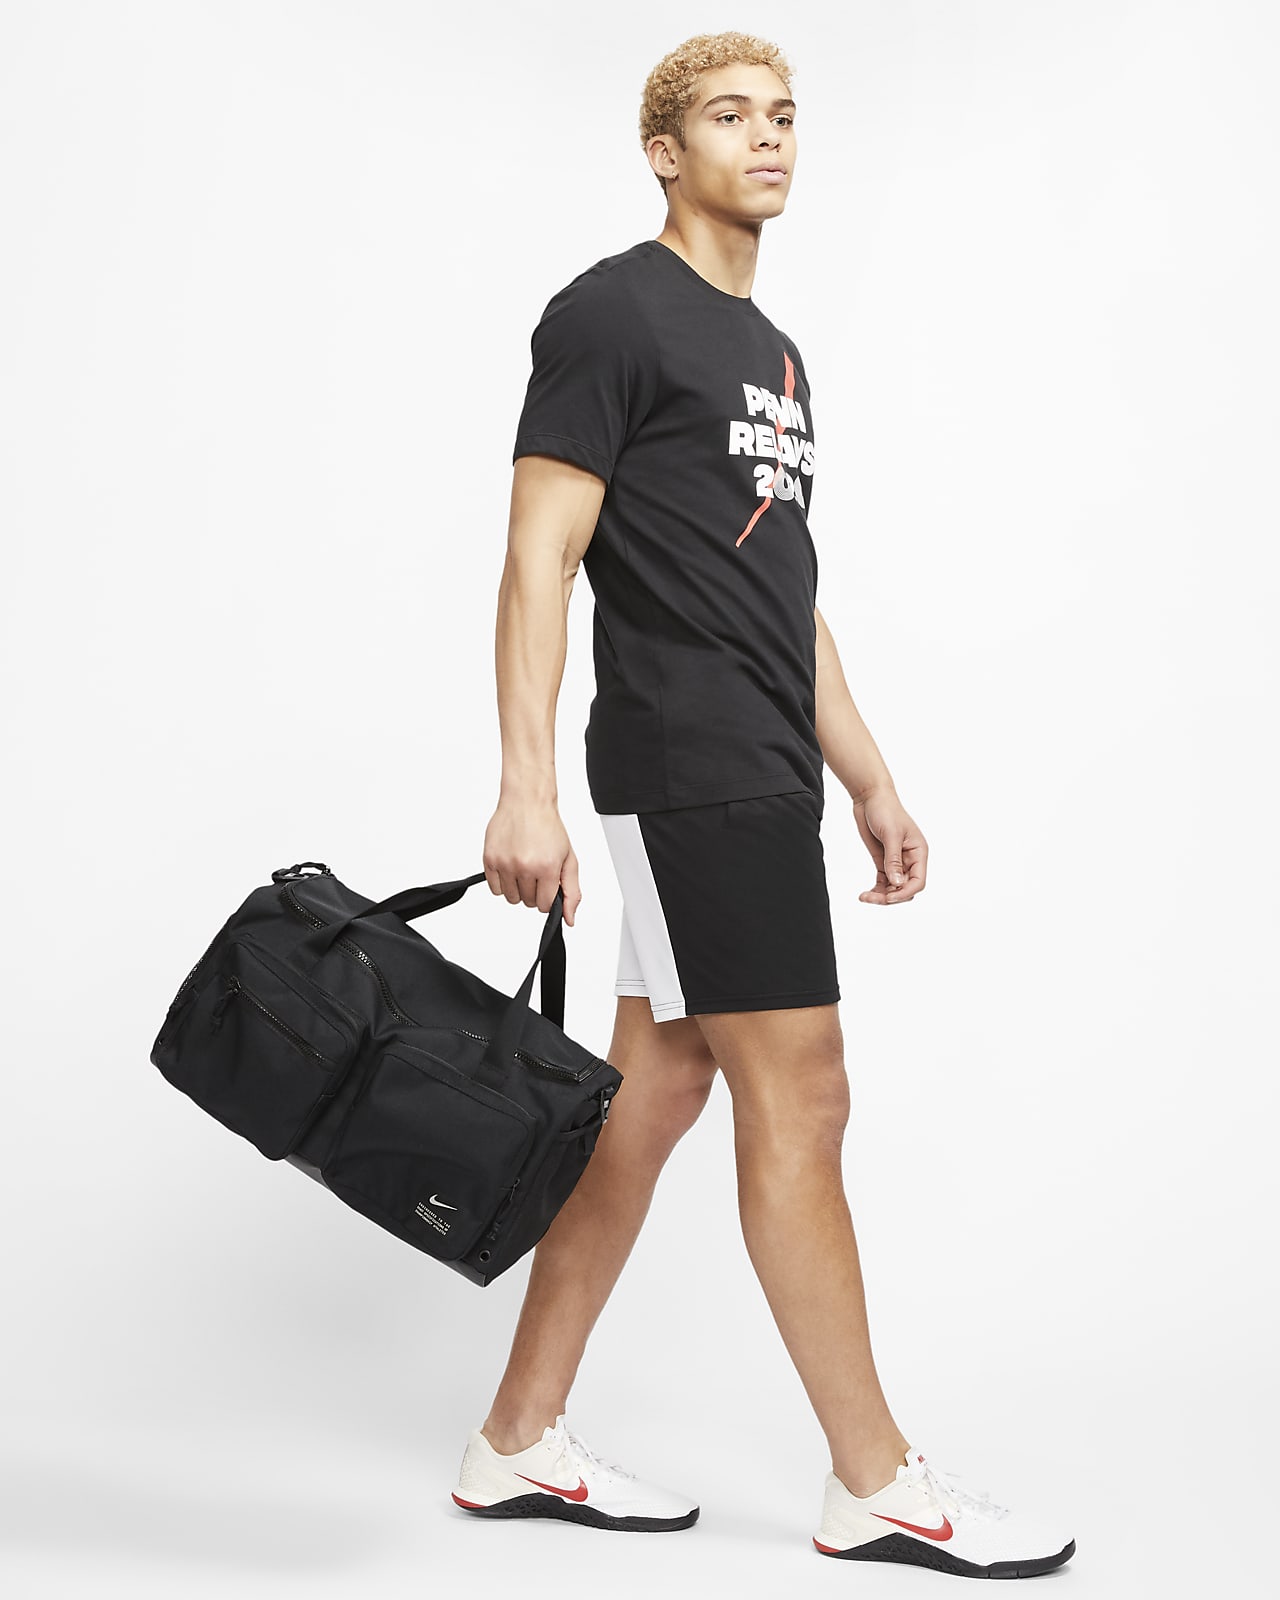 Nike Duffel Bags in Luggage 